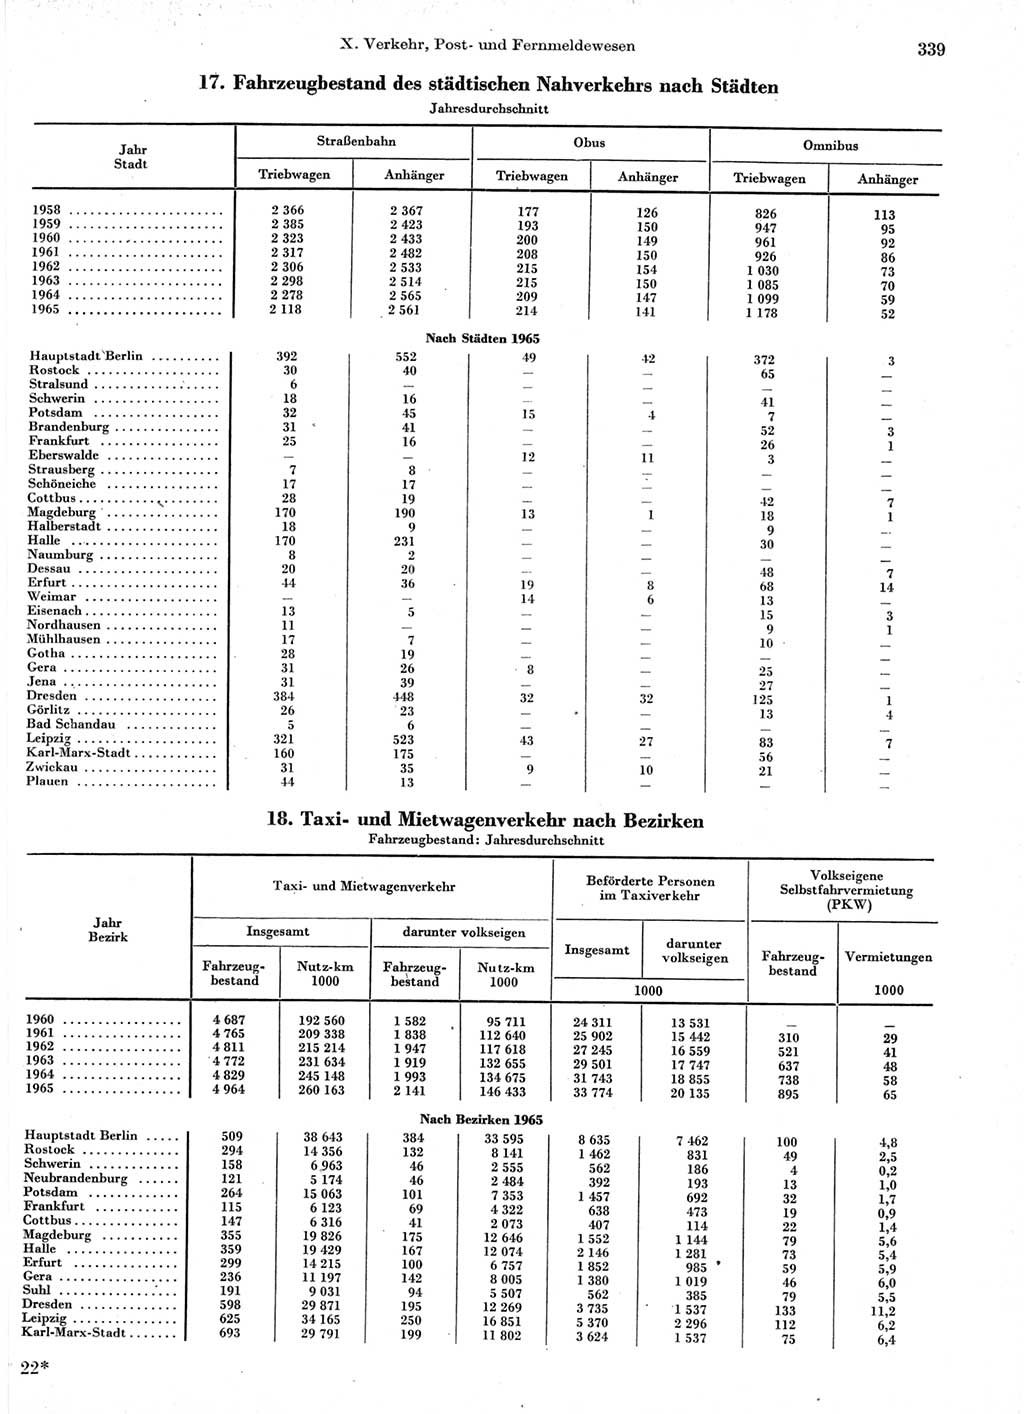 Statistisches Jahrbuch der Deutschen Demokratischen Republik (DDR) 1966, Seite 339 (Stat. Jb. DDR 1966, S. 339)